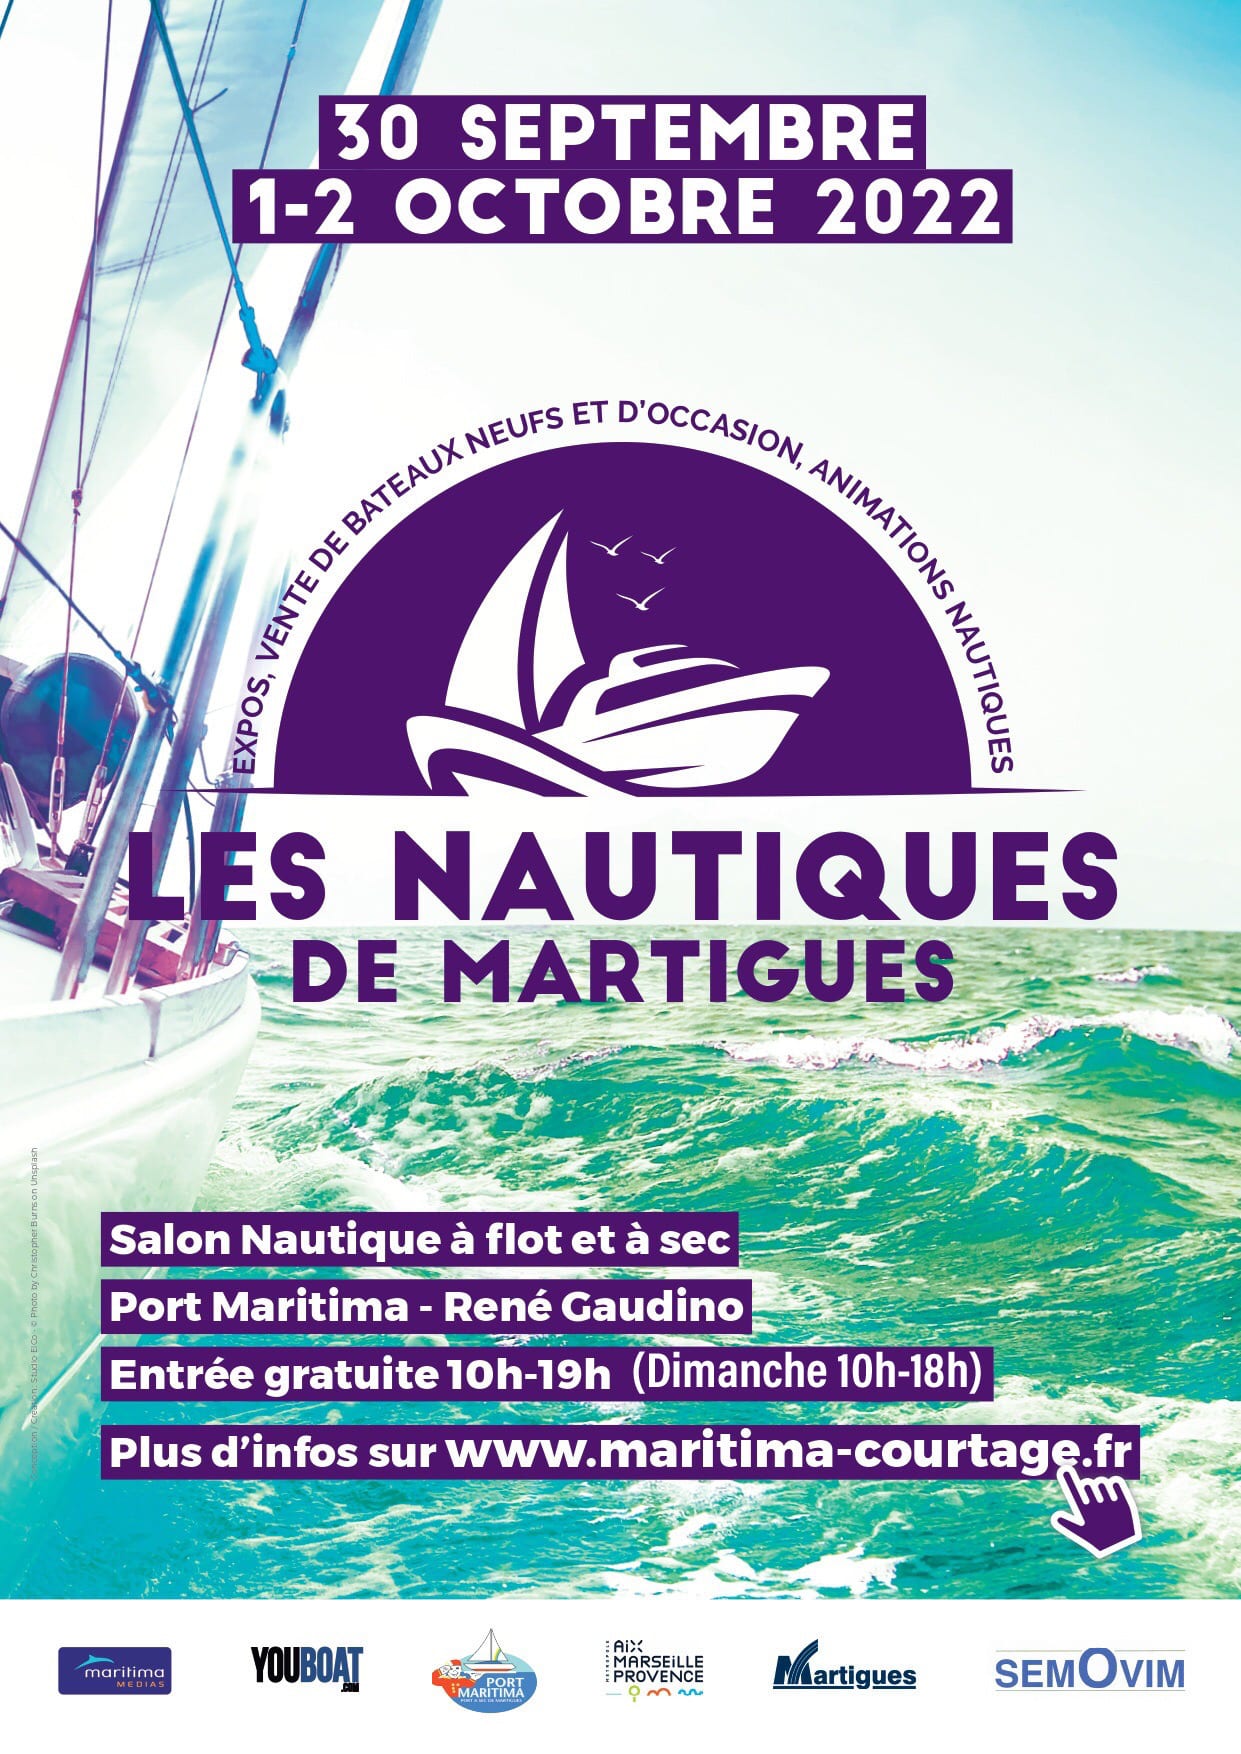 Les nautiques de Martigues 2022 com o desenvolvimento da Casse marine